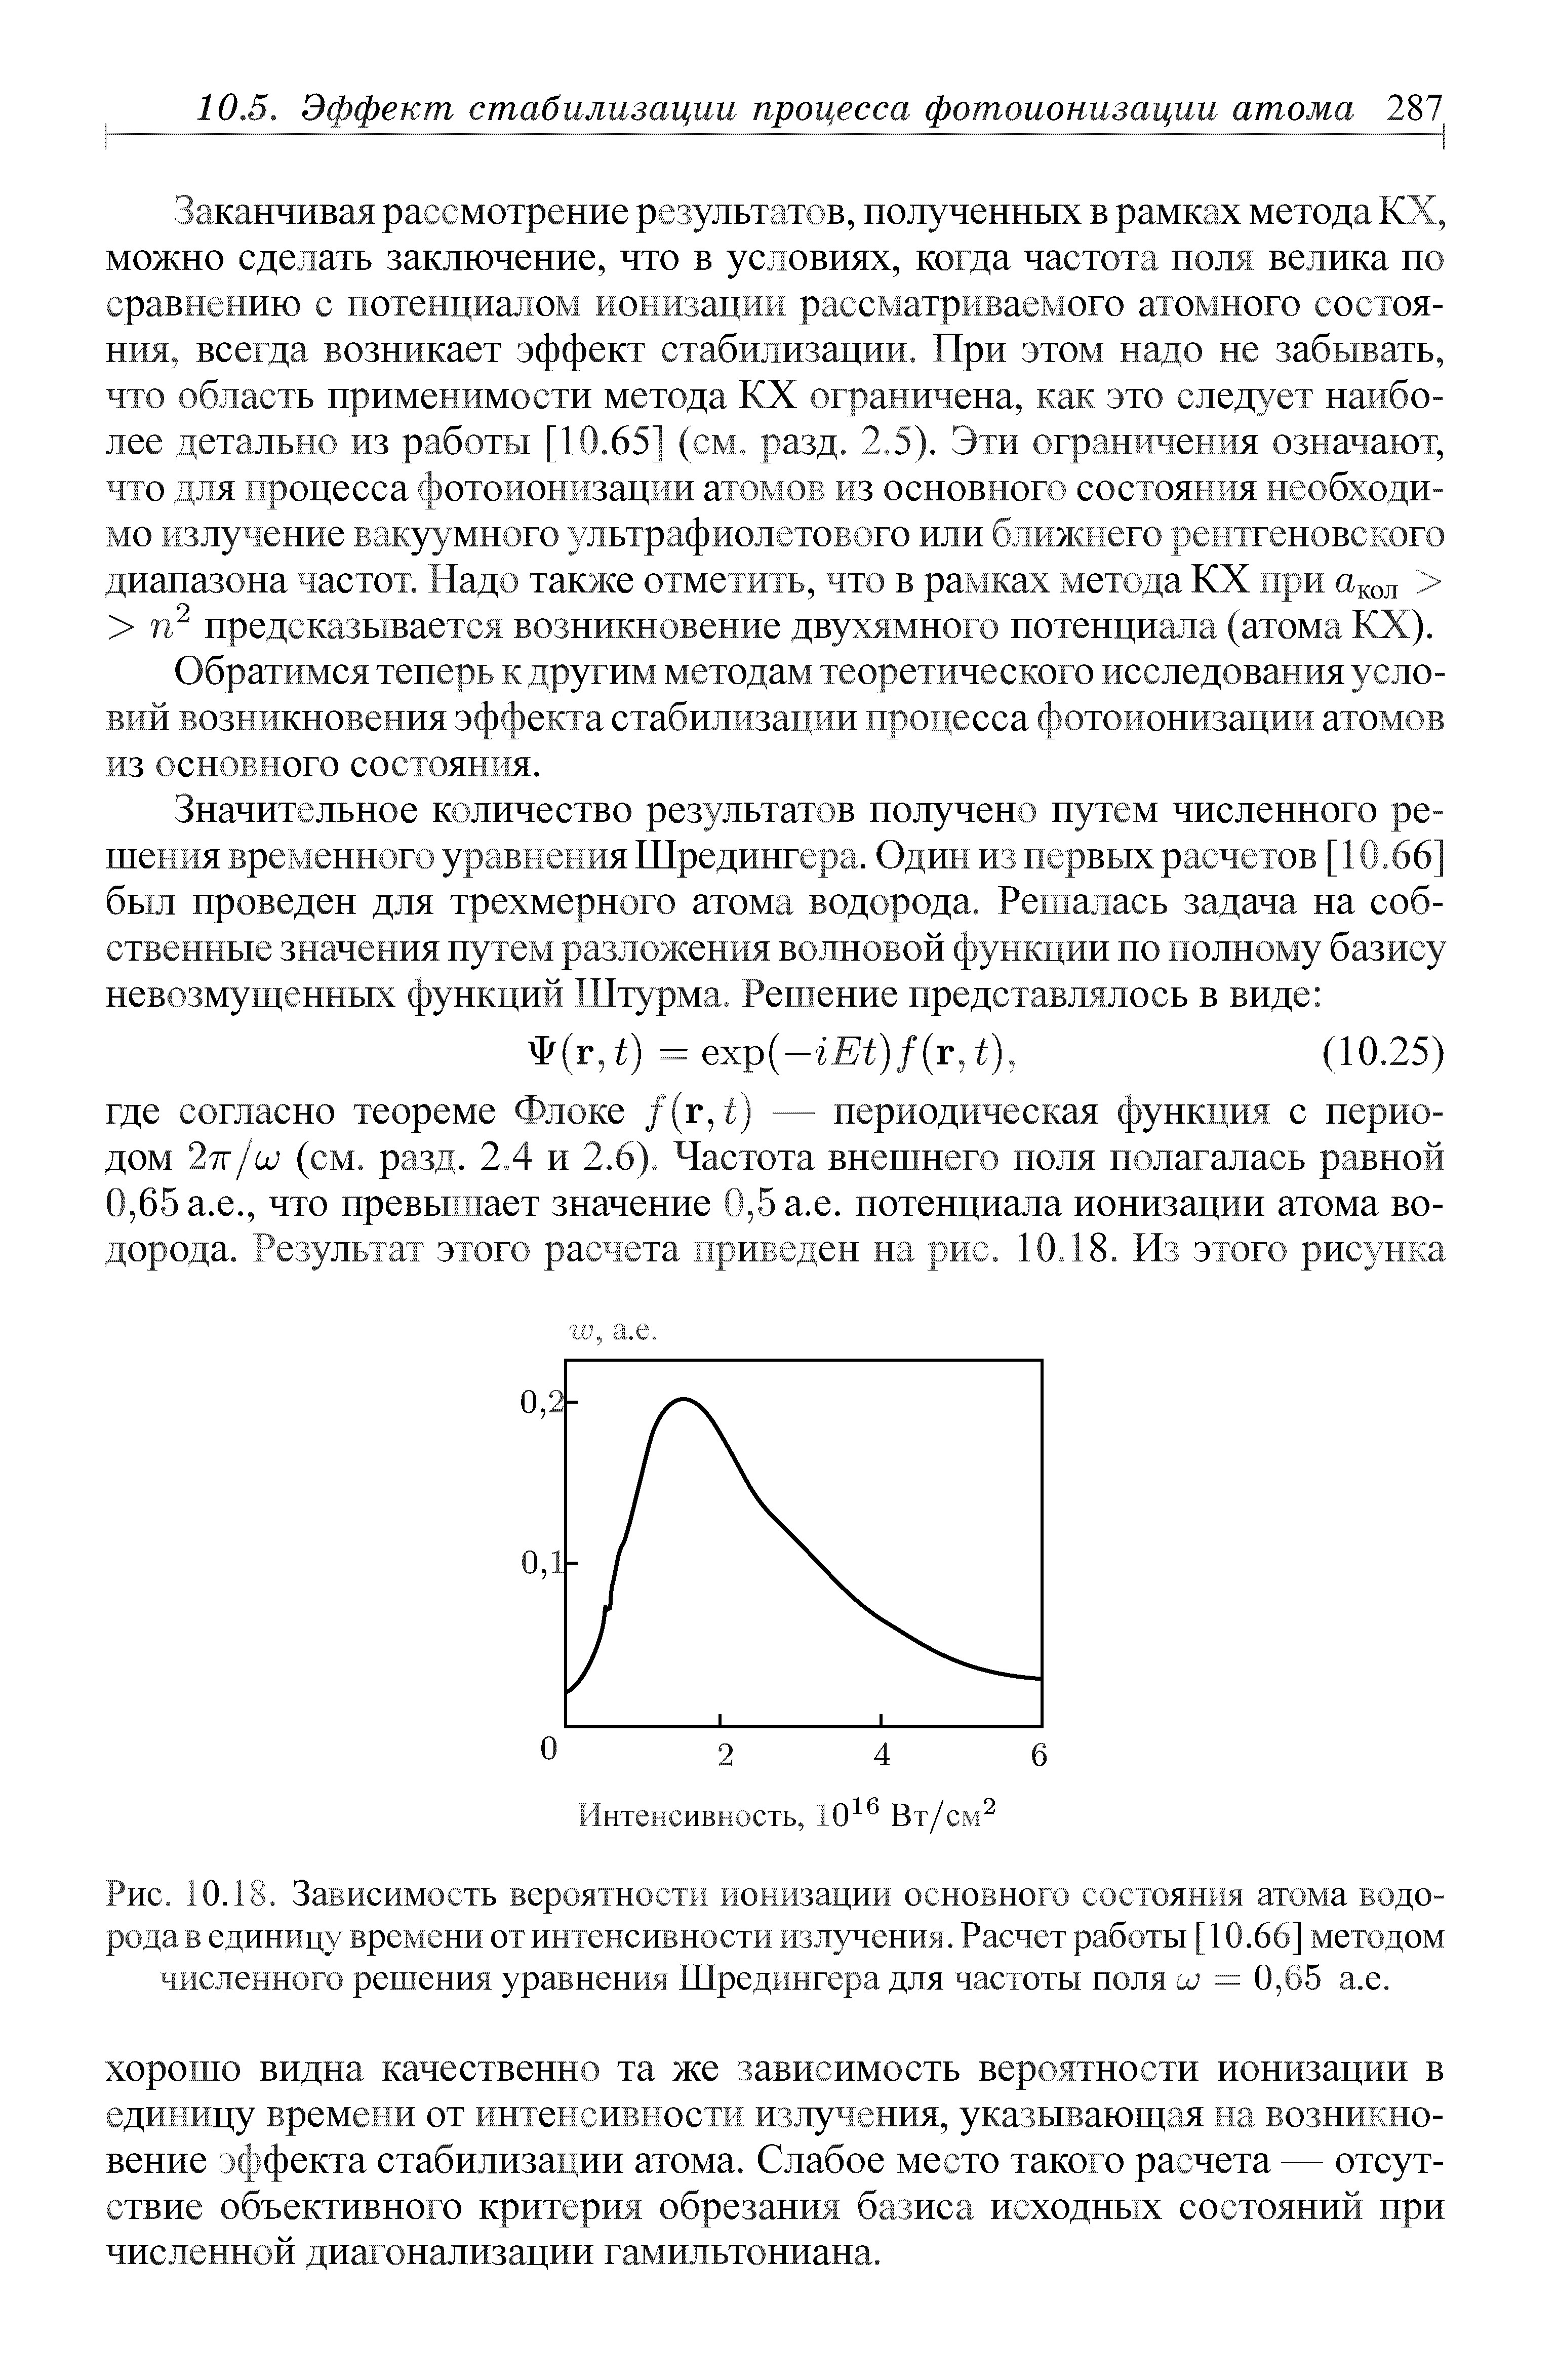 Рис. 10.18. Зависимость вероятности ионизации <a href="/info/12627">основного состояния</a> атома водорода в единицу времени от <a href="/info/18861">интенсивности излучения</a>. Расчет работы [ 10.66] методом численного решения уравнения Шредингера для частоты поля и) = 0,65 а.е.
